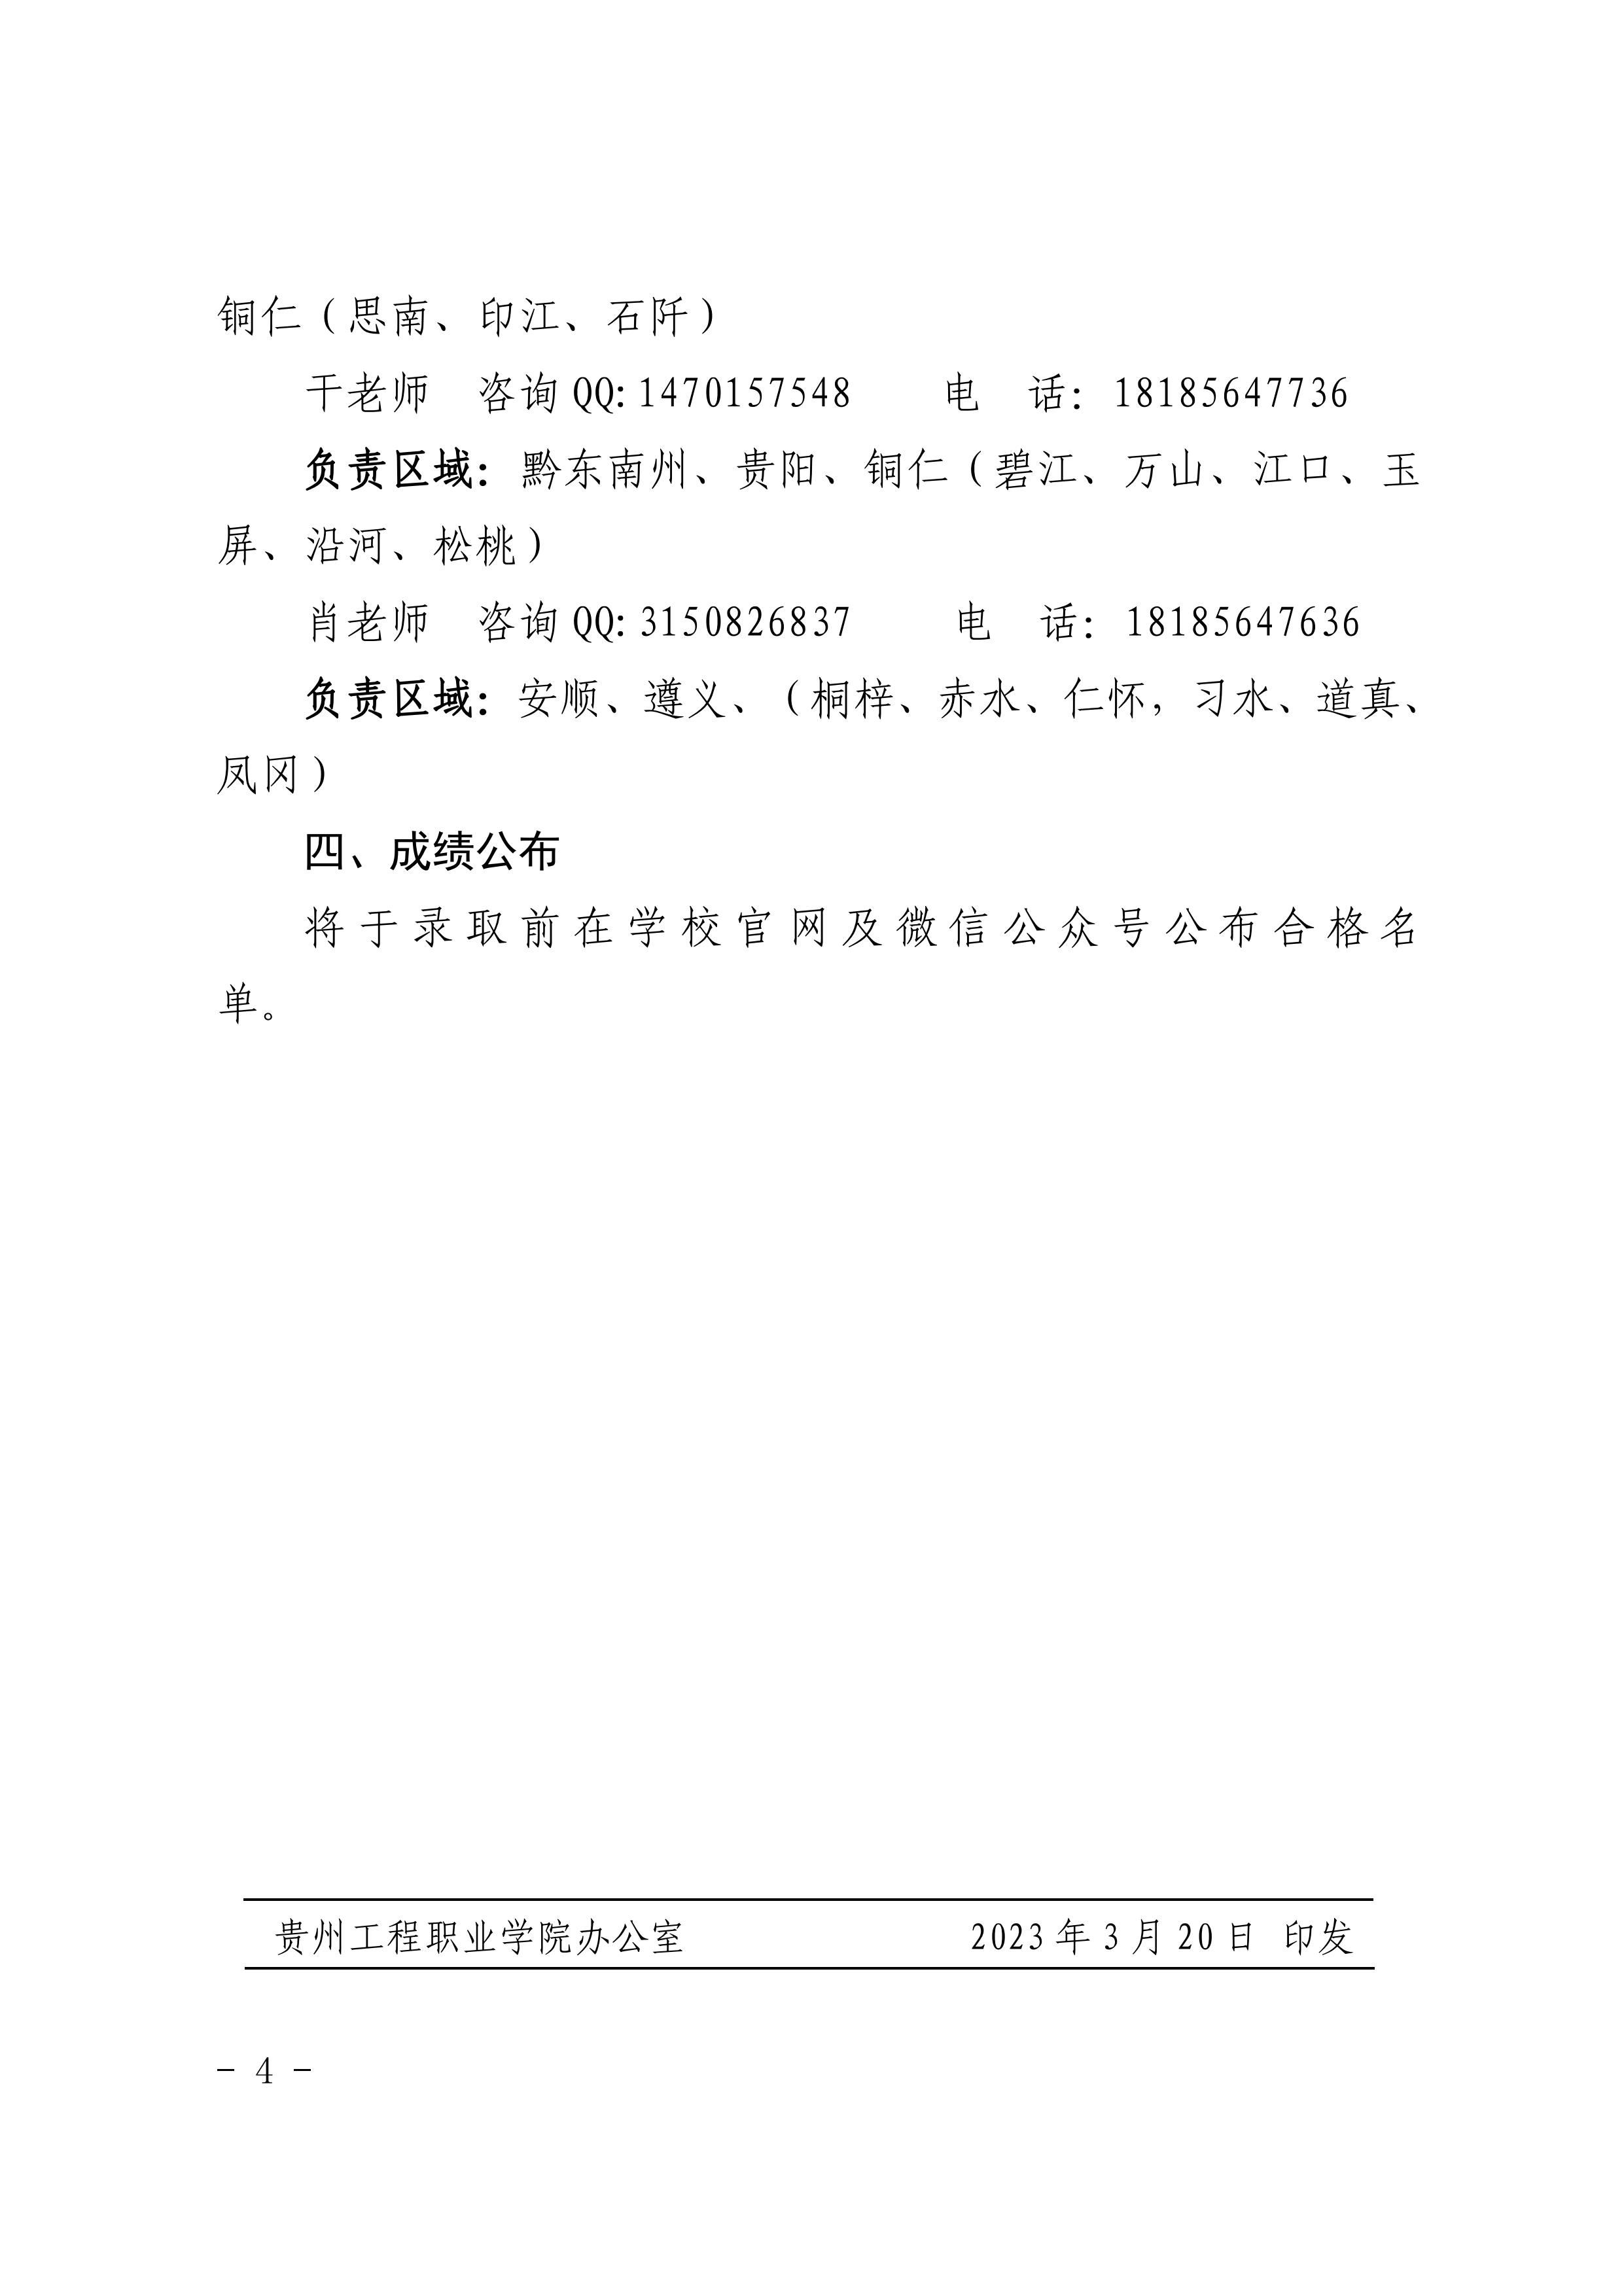 九州电竞(中国)九州有限公司 2023年分类考试招生职业适应性测试方案(图4)